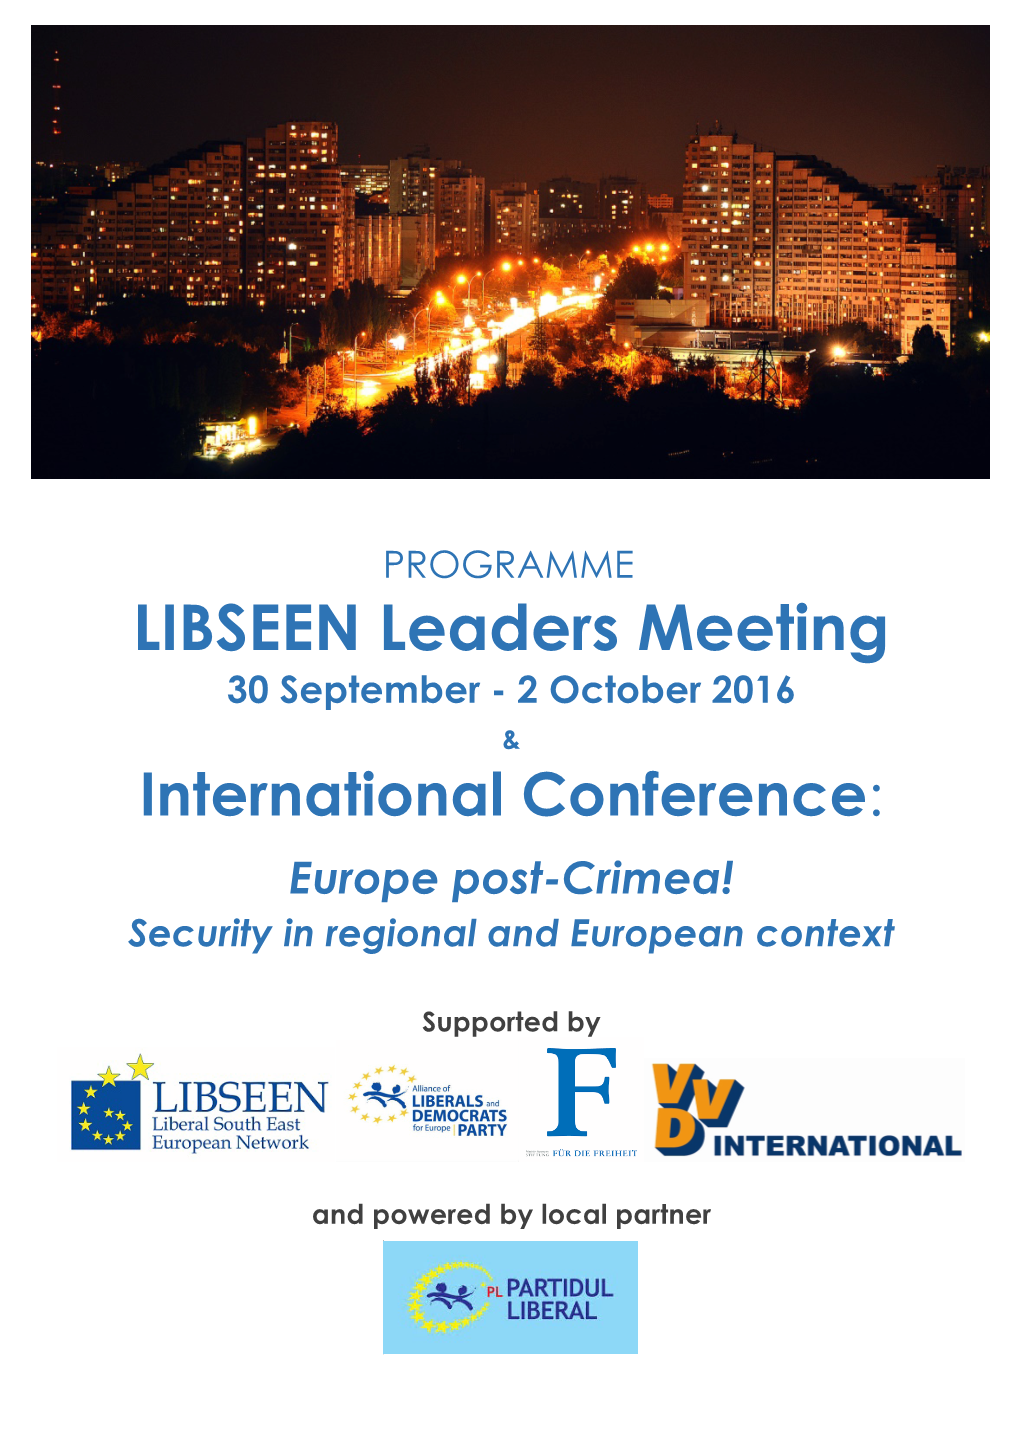 LIBSEEN Leaders Meeting 30 September - 2 October 2016